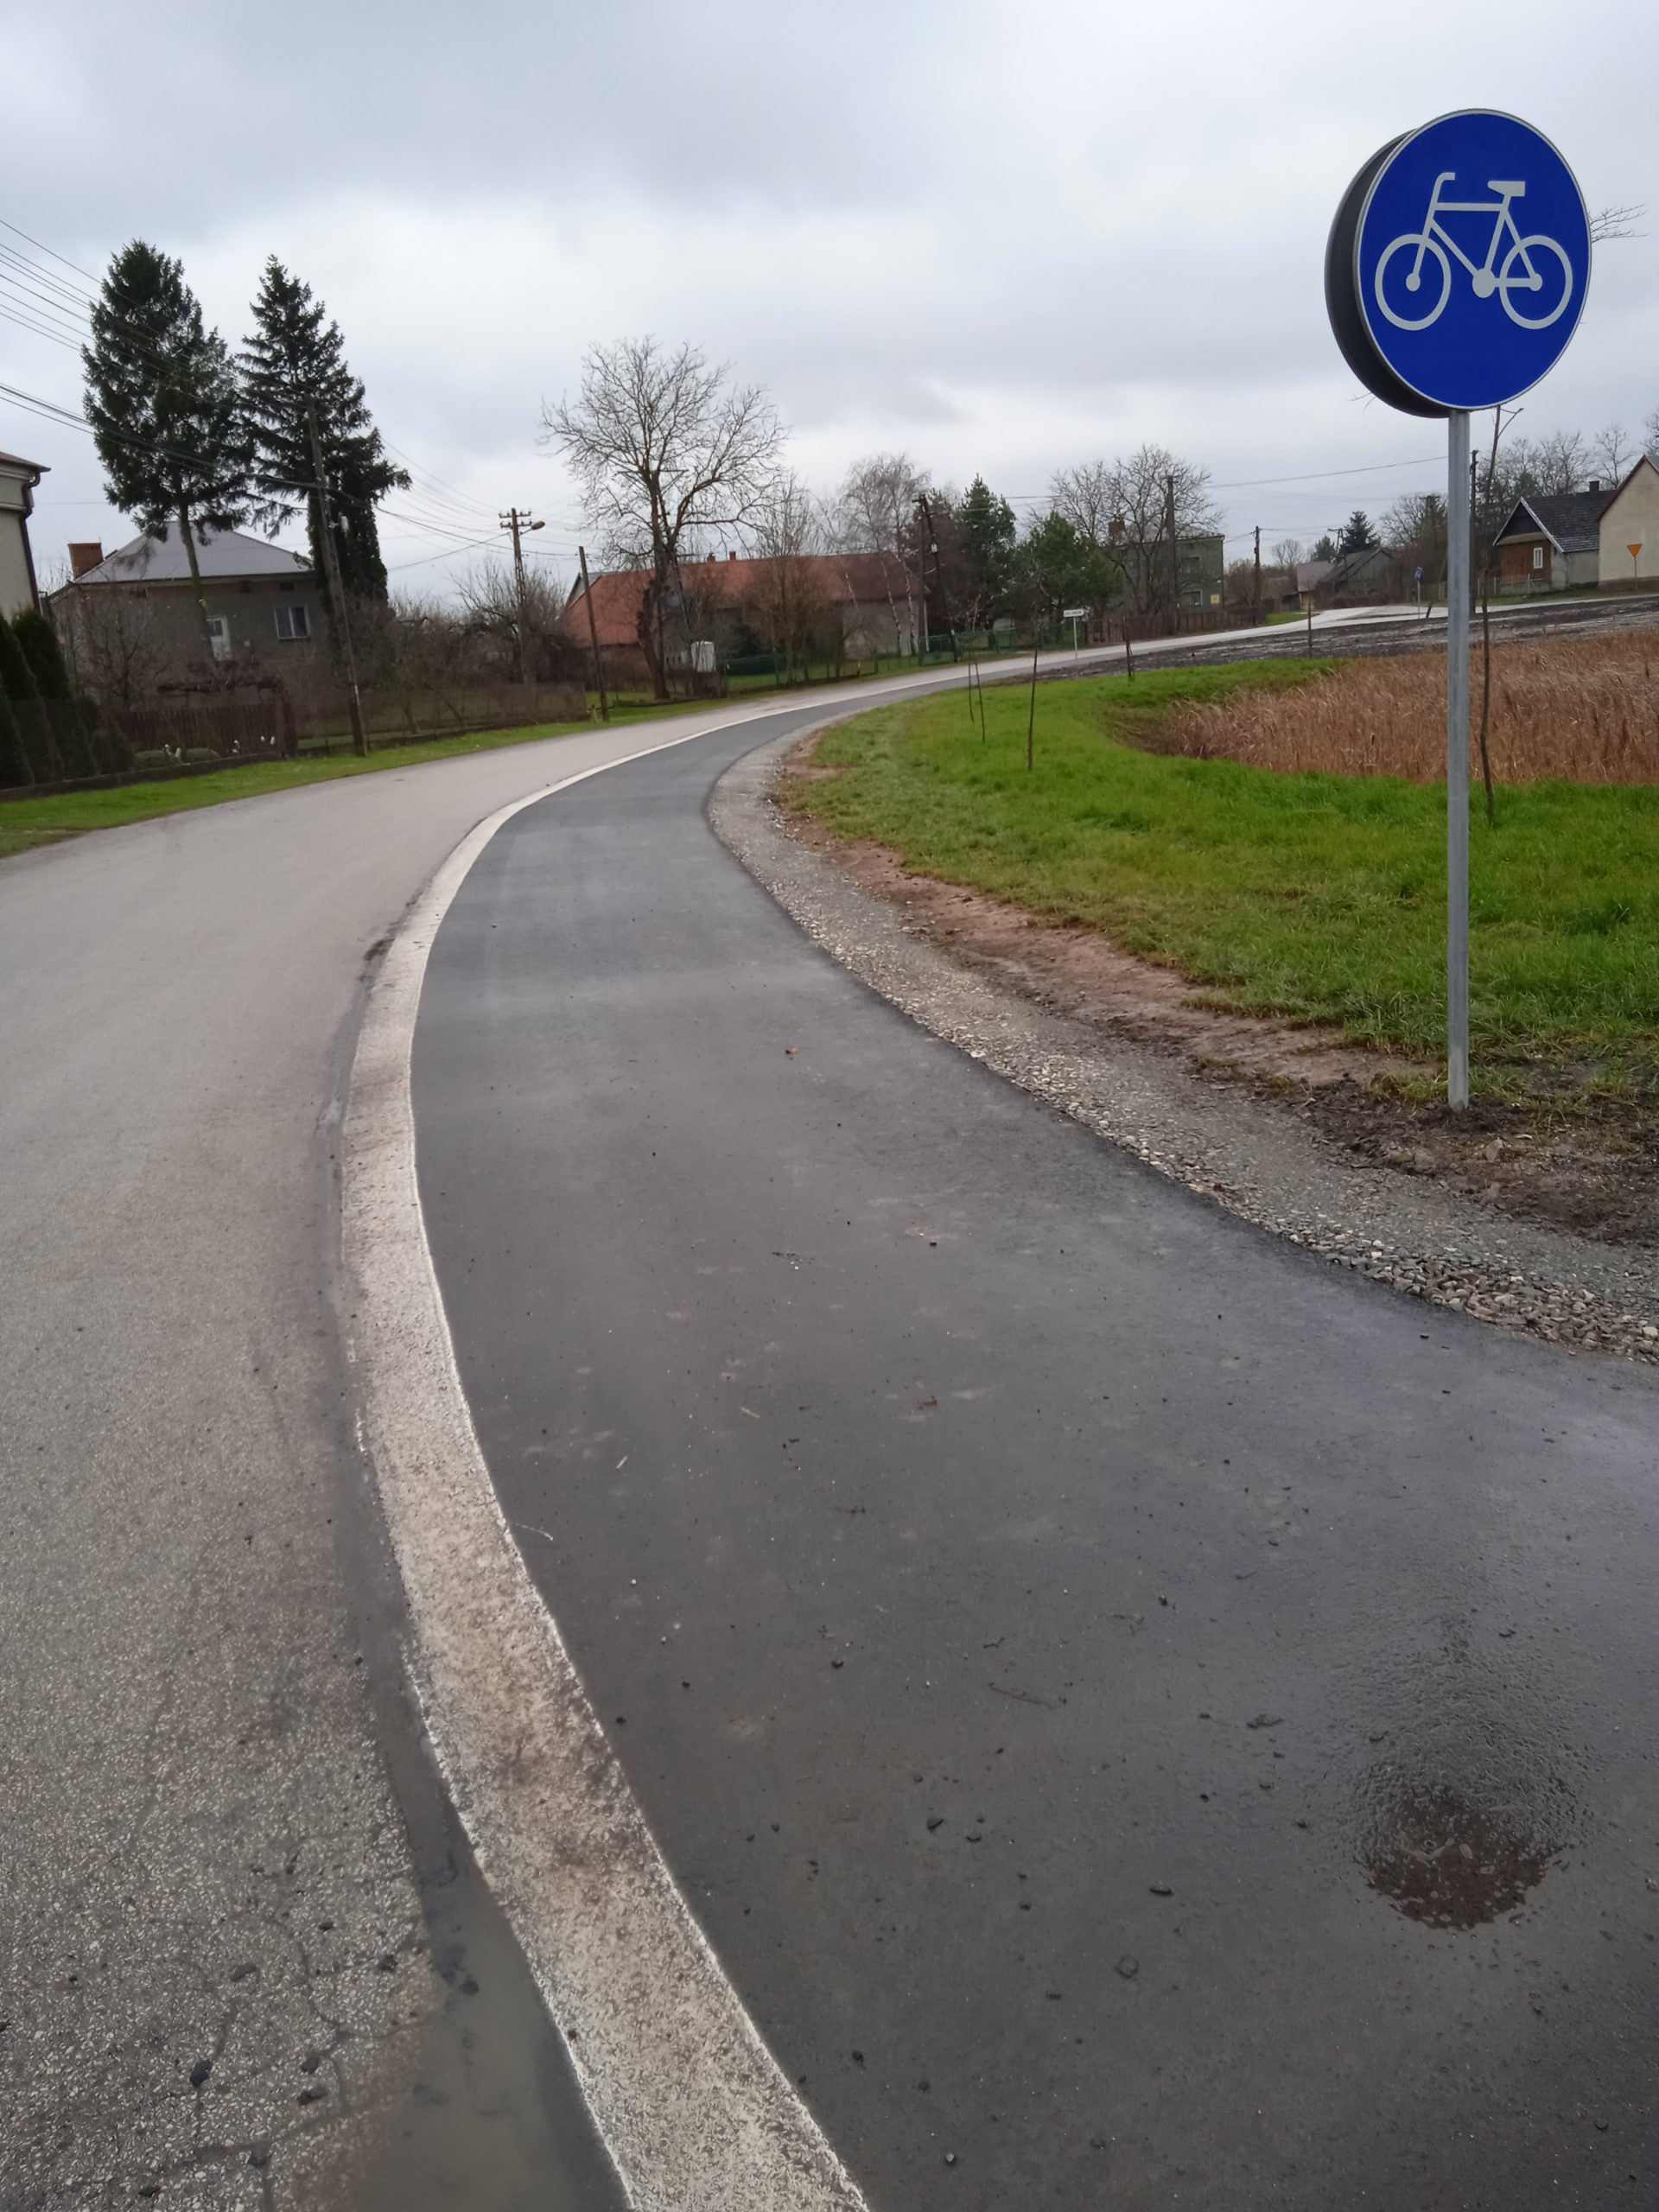 fragment drogi asfaltowej oraz wyznaczona ścieżkę rowerową delikatnie skręcającą w prawo. Po prawej stronie stoi znak "ścieżka rowerowa"